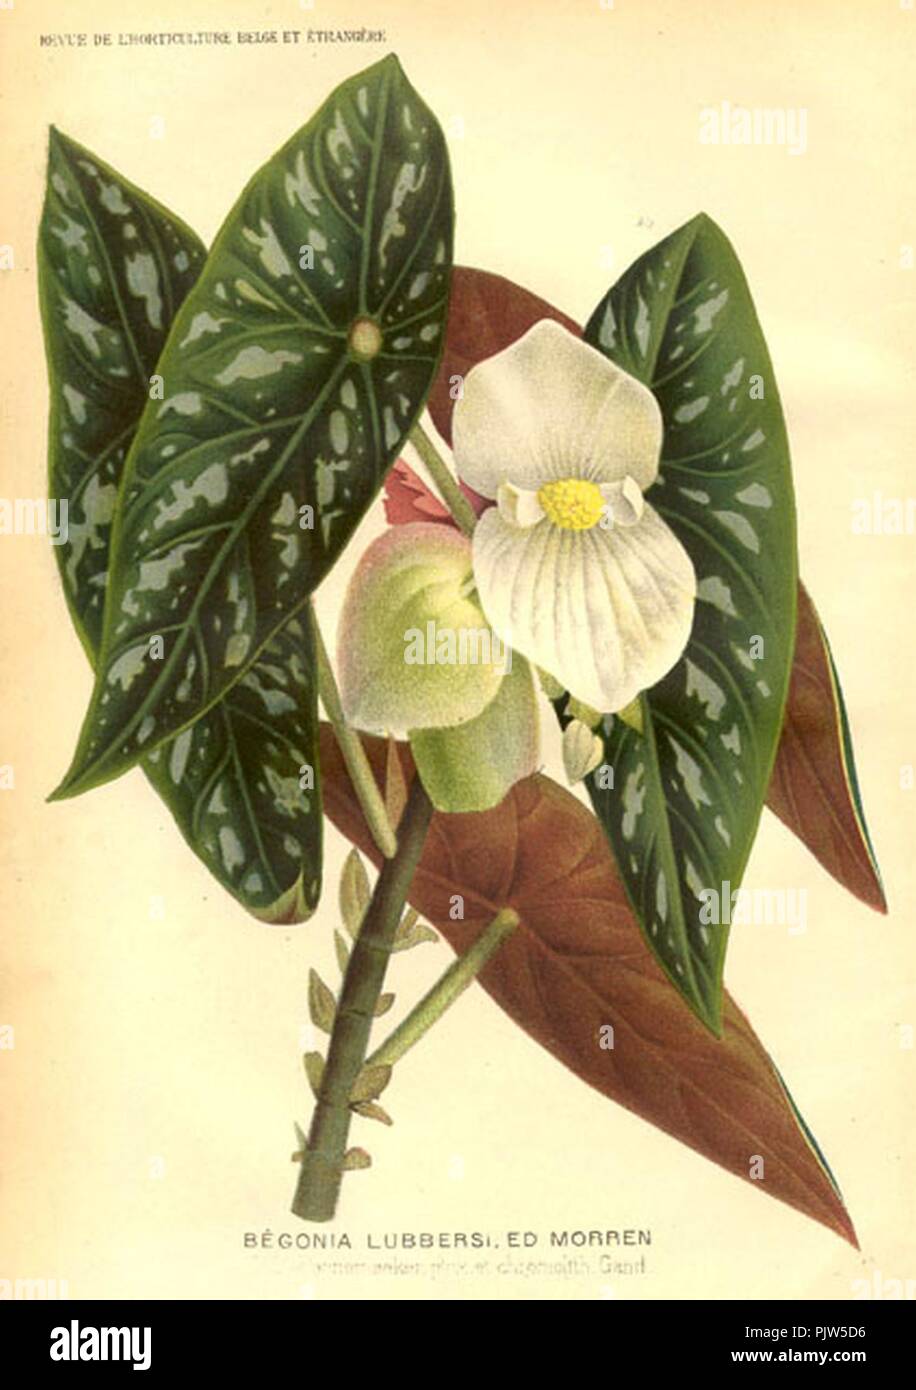 Begonia lubbersii. Stock Photo